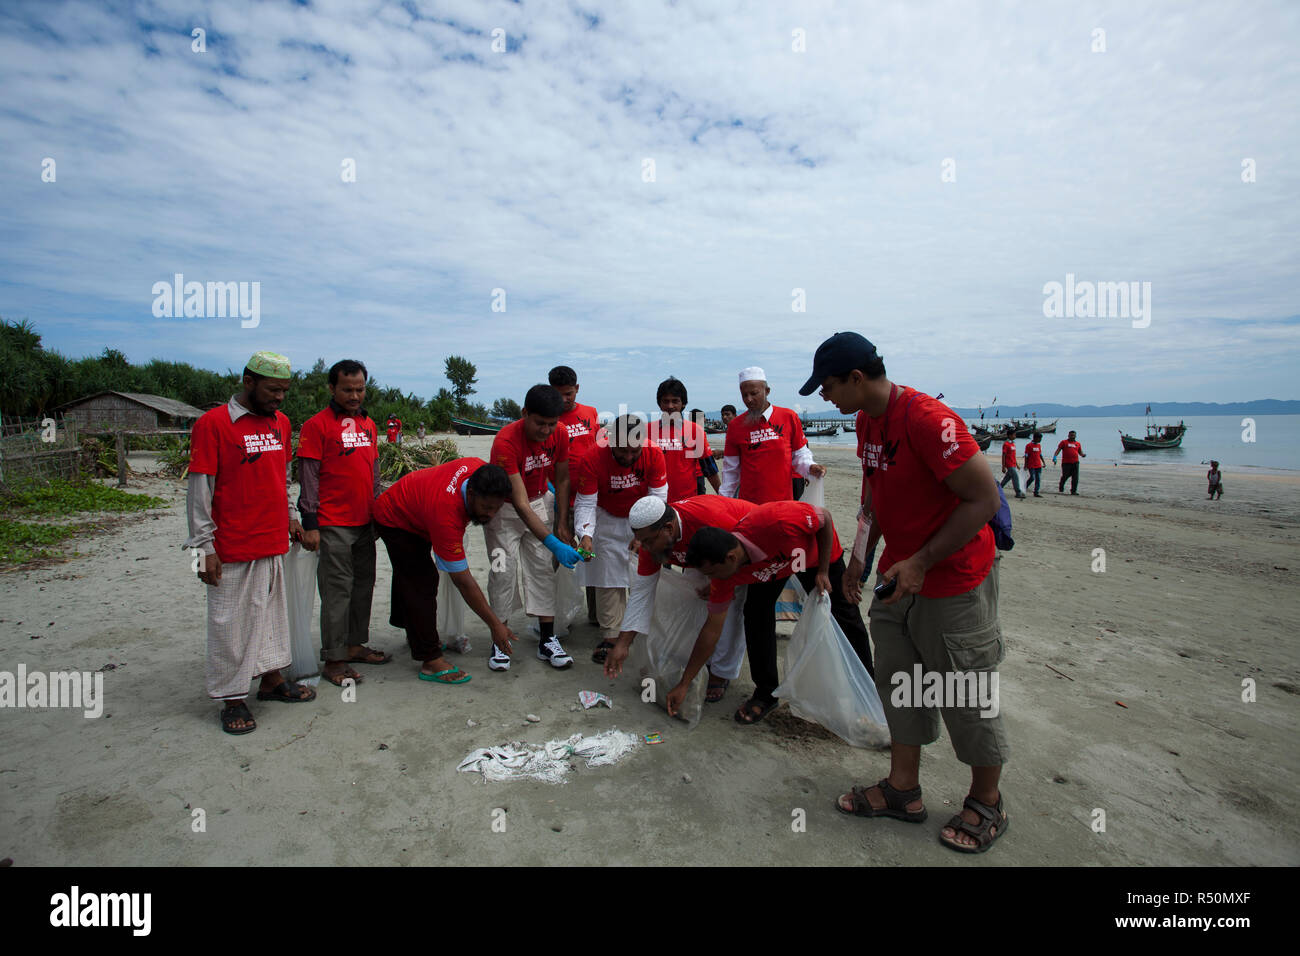 La journée de nettoyage du littoral est observé dans l'île. Les gens participent à l'élimination des déchets et débris de différentes plages et w Banque D'Images